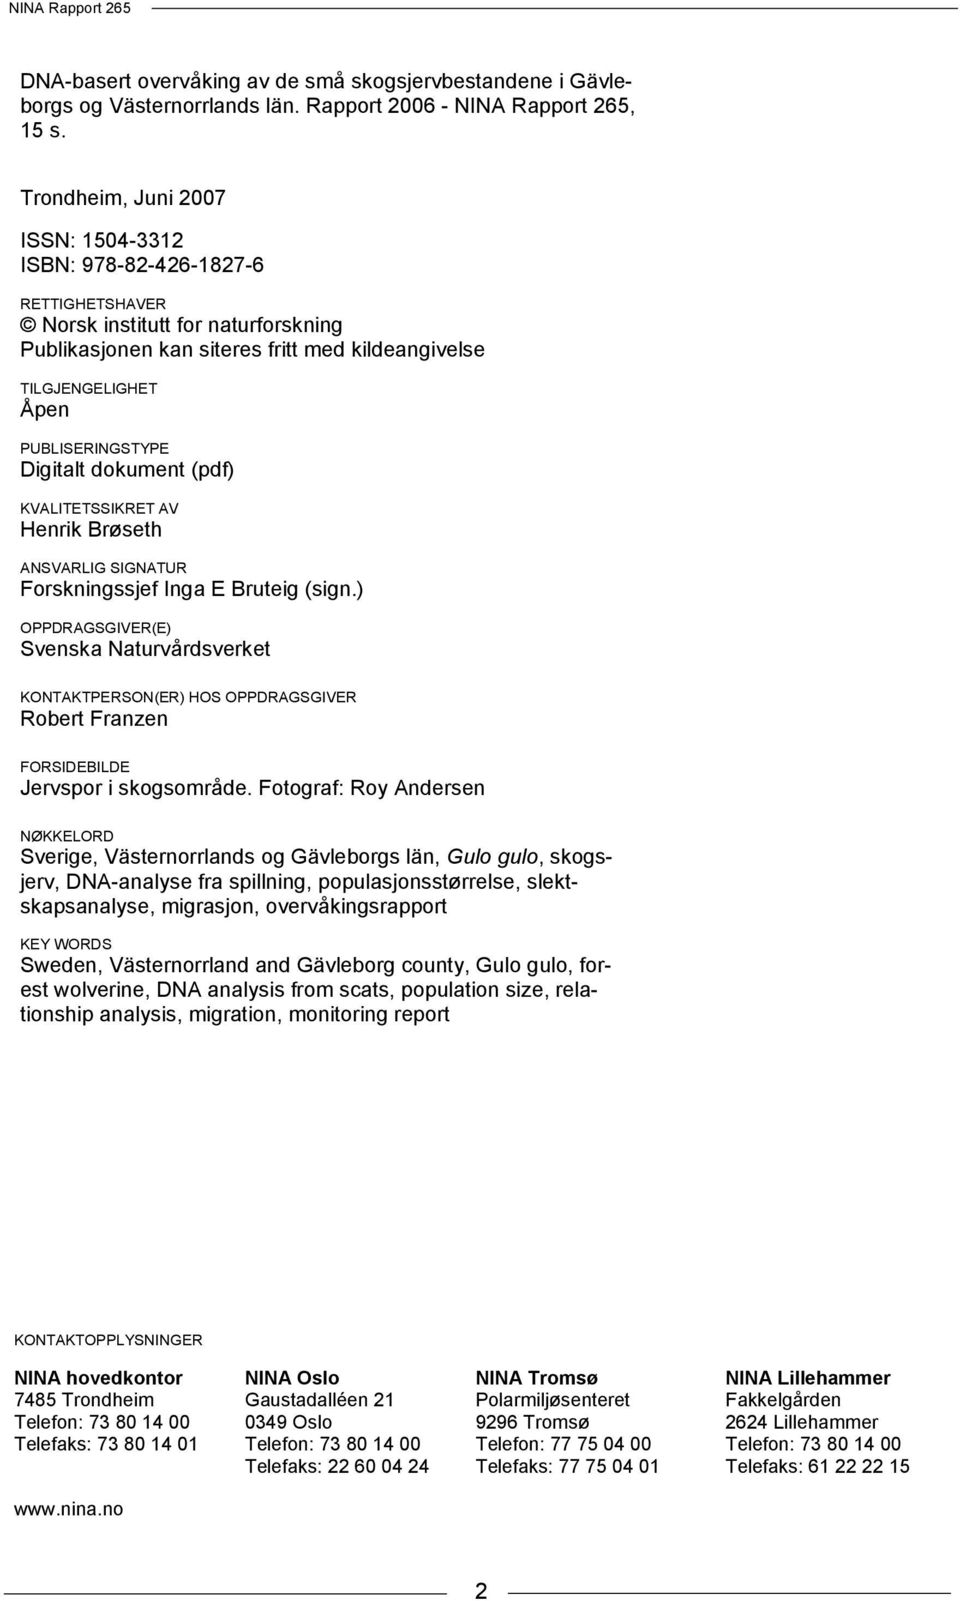 PUBLISERINGSTYPE Digitalt dokument (pdf) KVALITETSSIKRET AV Henrik Brøseth ANSVARLIG SIGNATUR Forskningssjef Inga E Bruteig (sign.